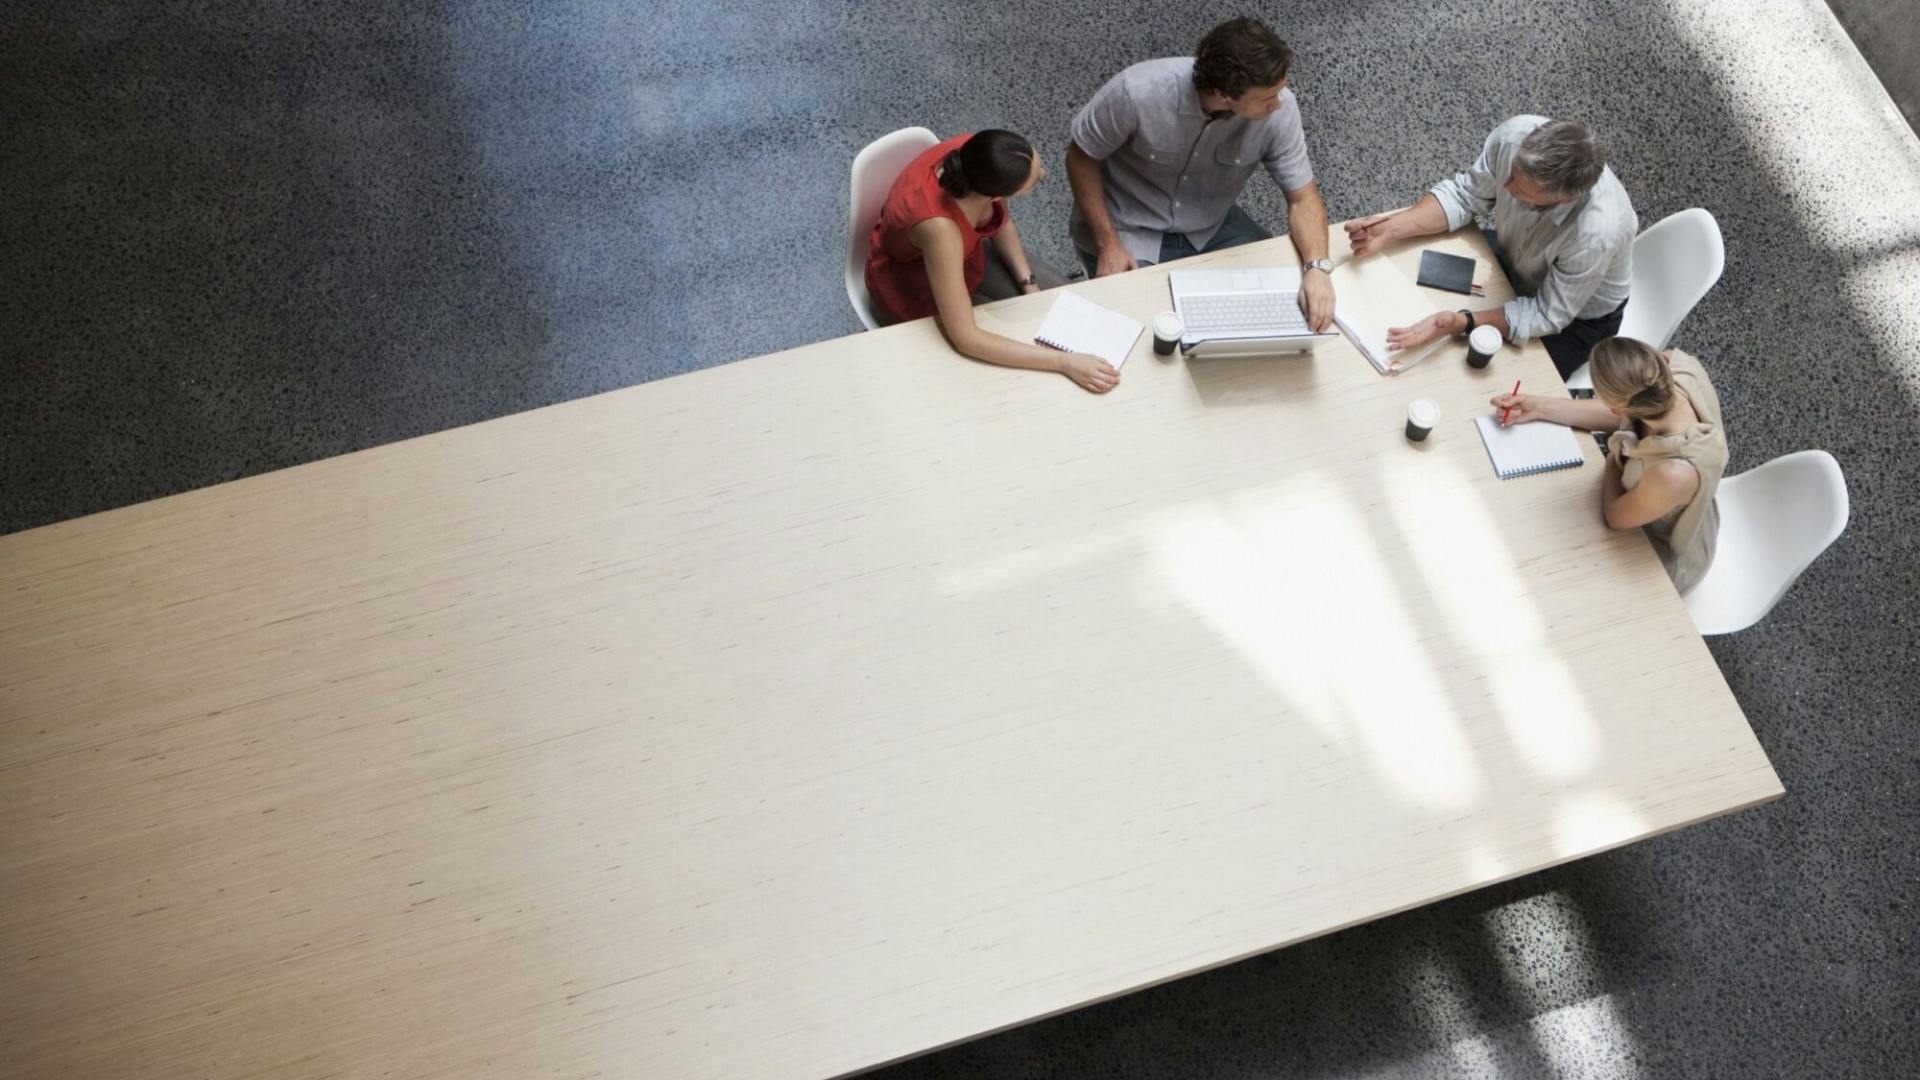 Grosser Holztisch mit 4 Personen in einem Meeting